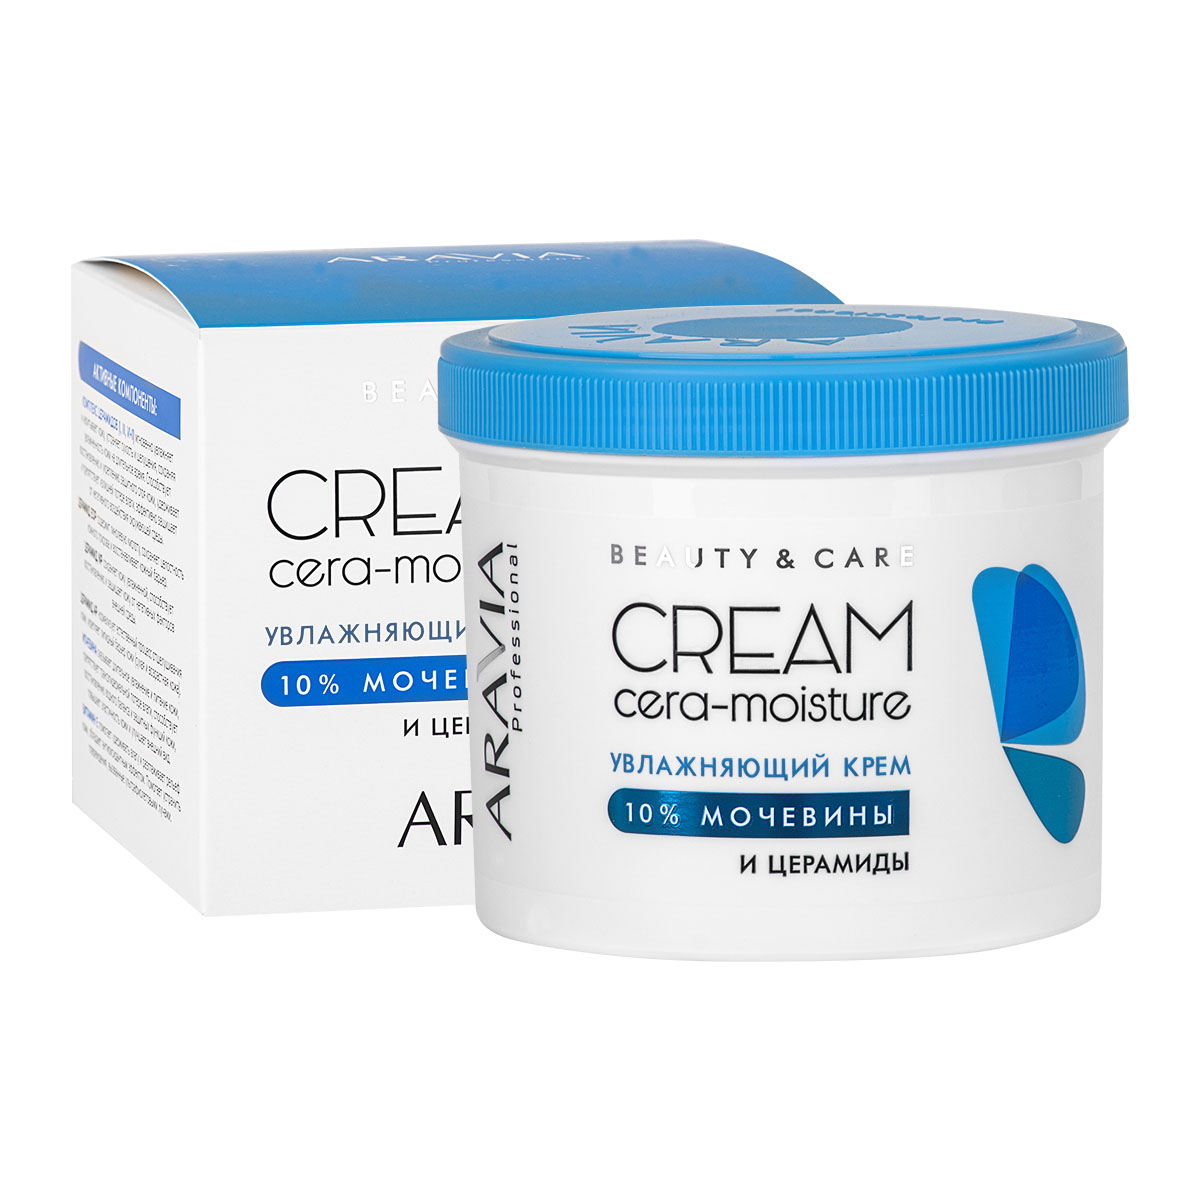 Аравия Профессионал Увлажняющий крем с церамидами и мочевиной (10%) Cera-Moisture Cream, 550 мл (Aravia Professional, SPA маникюр) фото 0